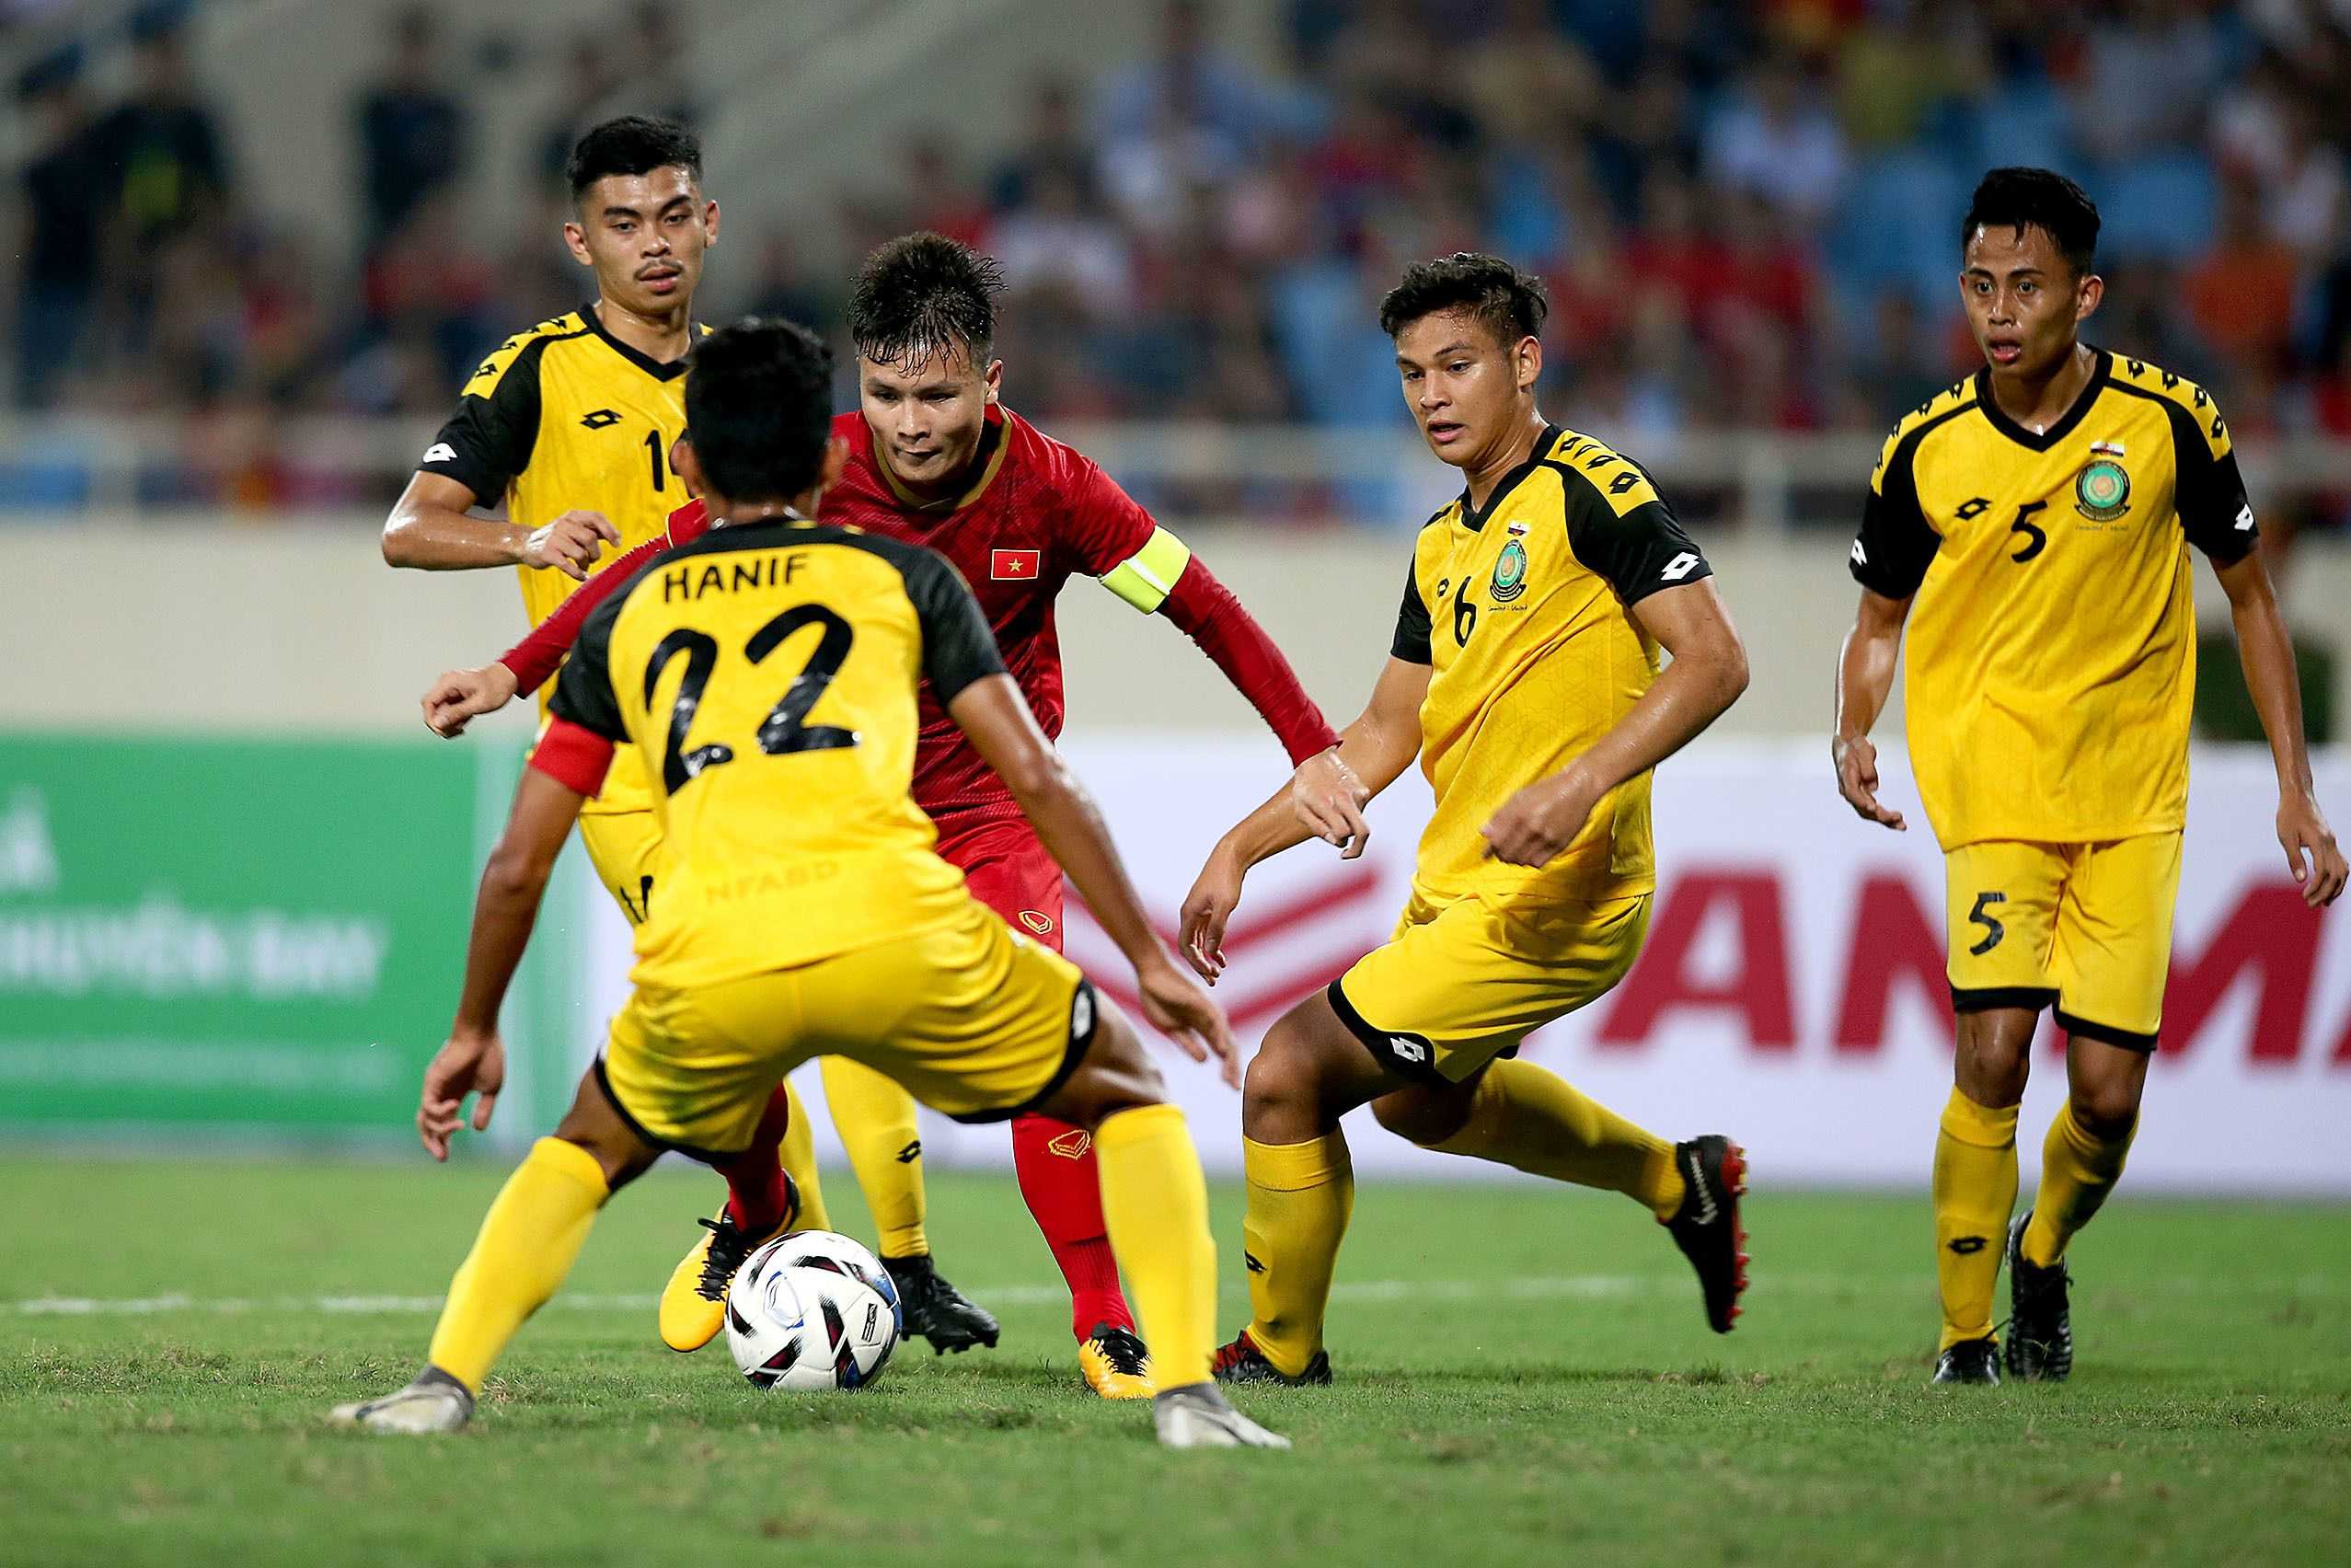 U23 Việt Nam vẫn phải dốc sức trong hai trận đấu còn lại nếu muốn giành vé dự VCK U23 châu Á 2020